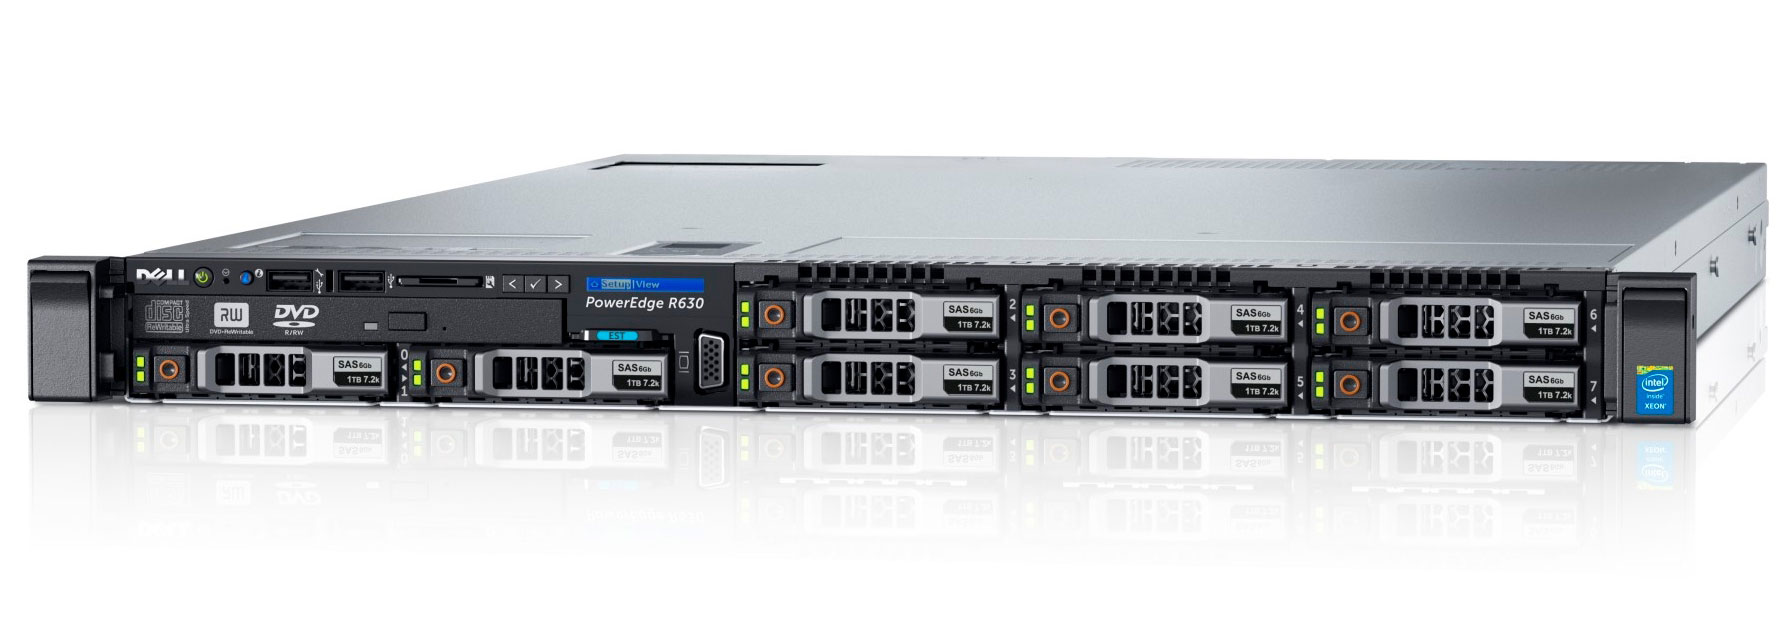 Подробное фото Сервер DELL PowerEdge R630 2*Xeon E5-2680v4 256Gb 2400T DDR4 8x noHDD 2.5" SAS RAID Perc H730, 2*PSU